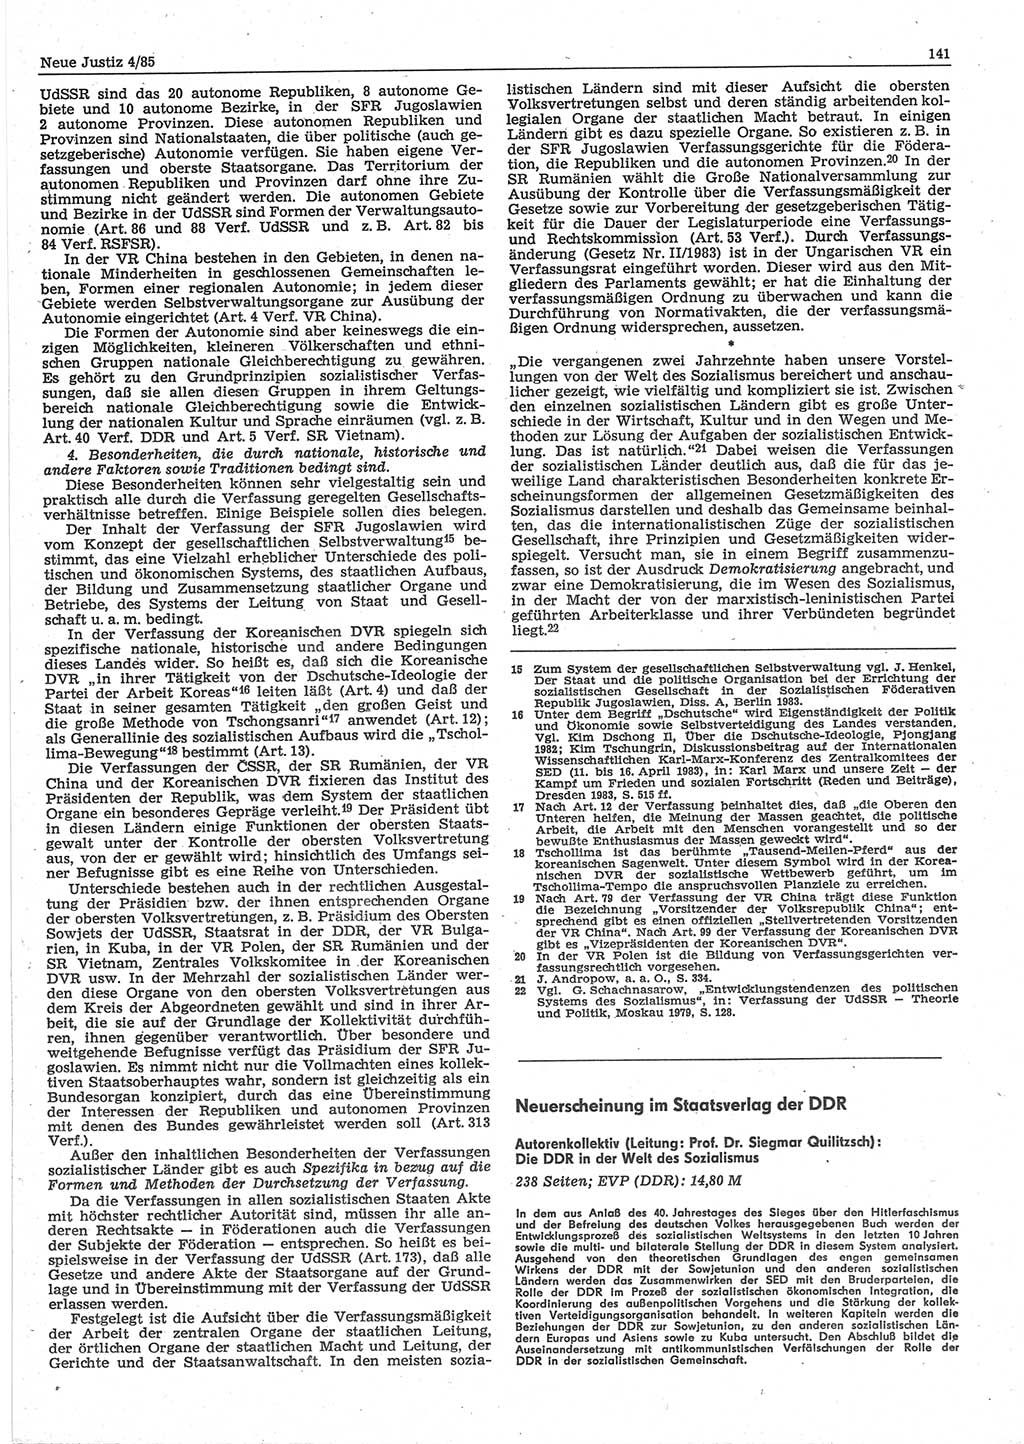 Neue Justiz (NJ), Zeitschrift für sozialistisches Recht und Gesetzlichkeit [Deutsche Demokratische Republik (DDR)], 39. Jahrgang 1985, Seite 141 (NJ DDR 1985, S. 141)